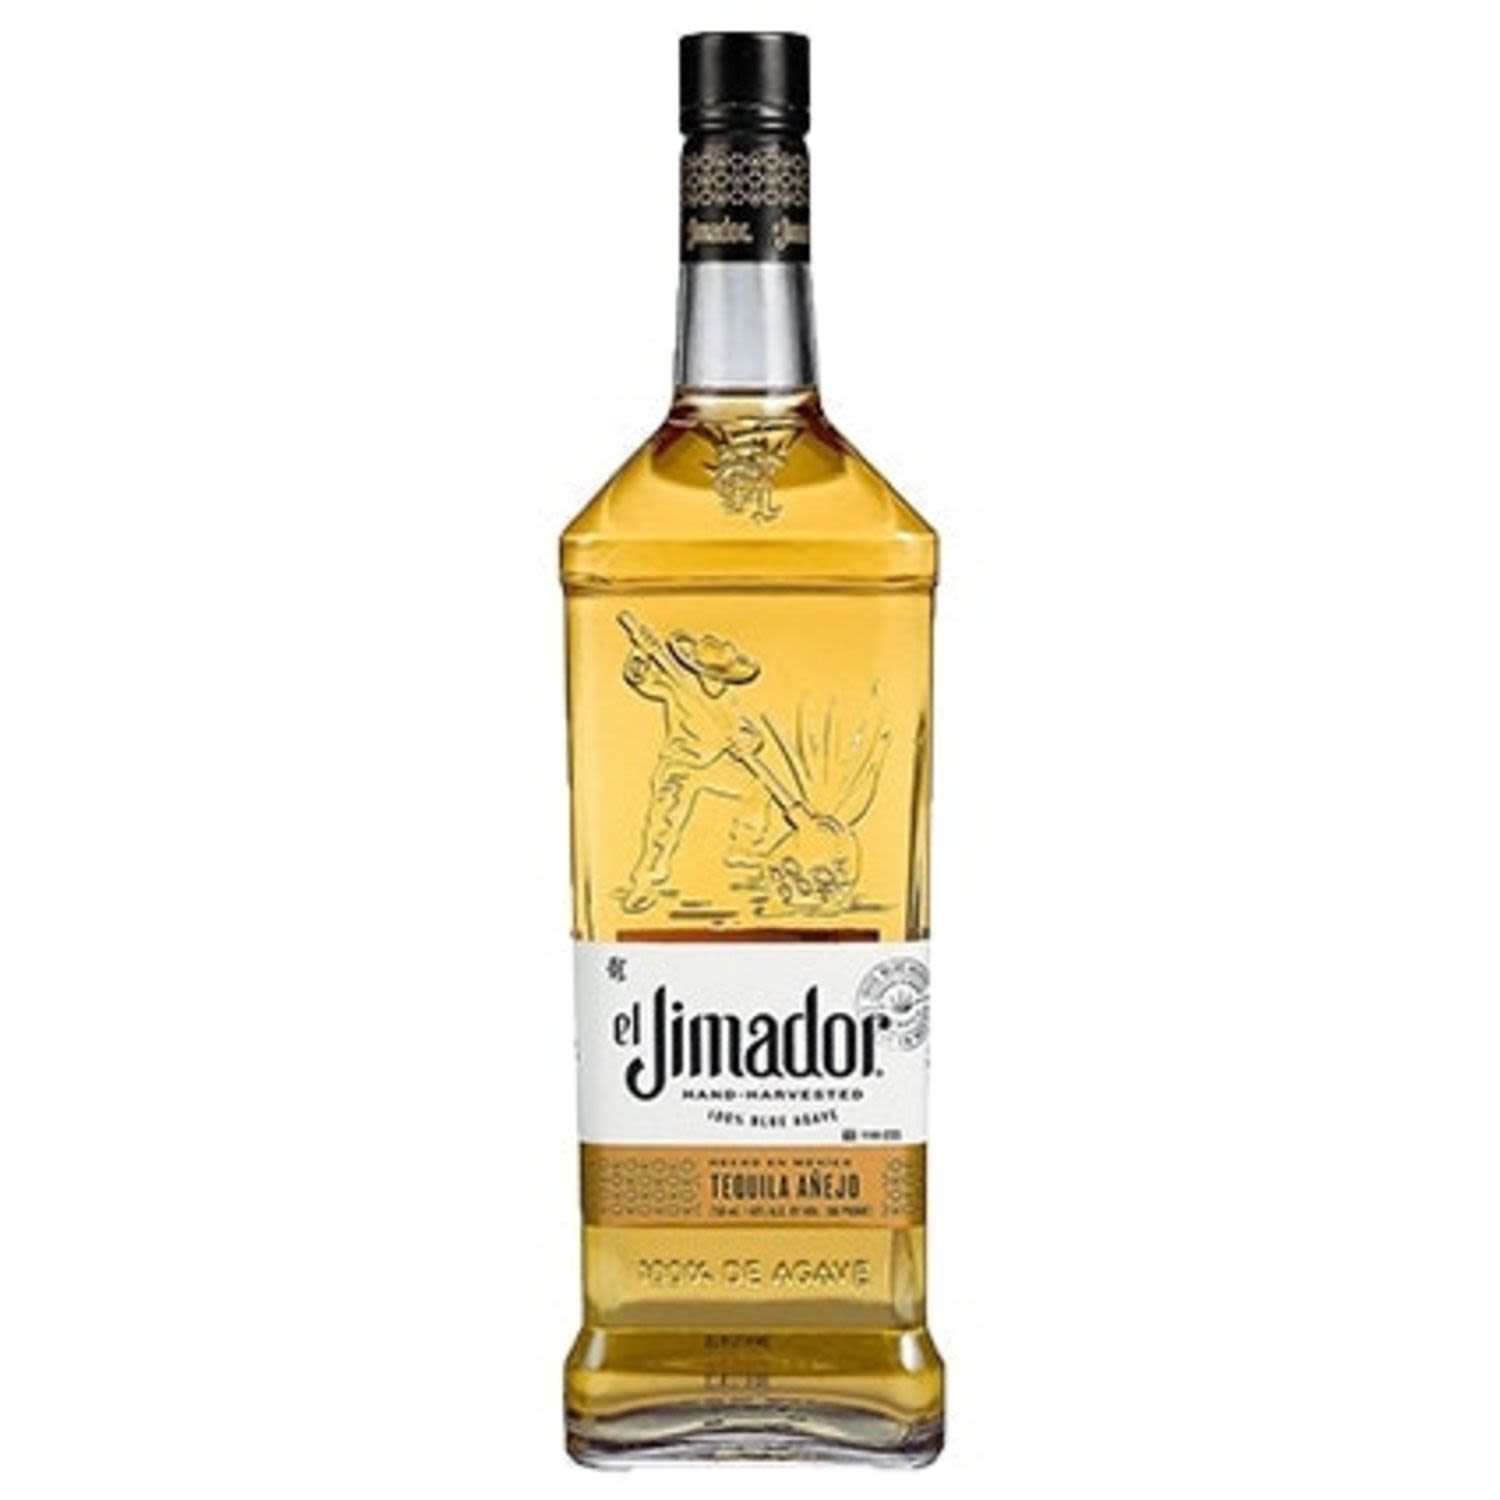 El Jimador Tequila Anejo 700mL<br /> <br />Alcohol Volume: 38.00%<br /><br />Pack Format: Bottle<br /><br />Standard Drinks: 21</br /><br />Pack Type: Bottle<br />